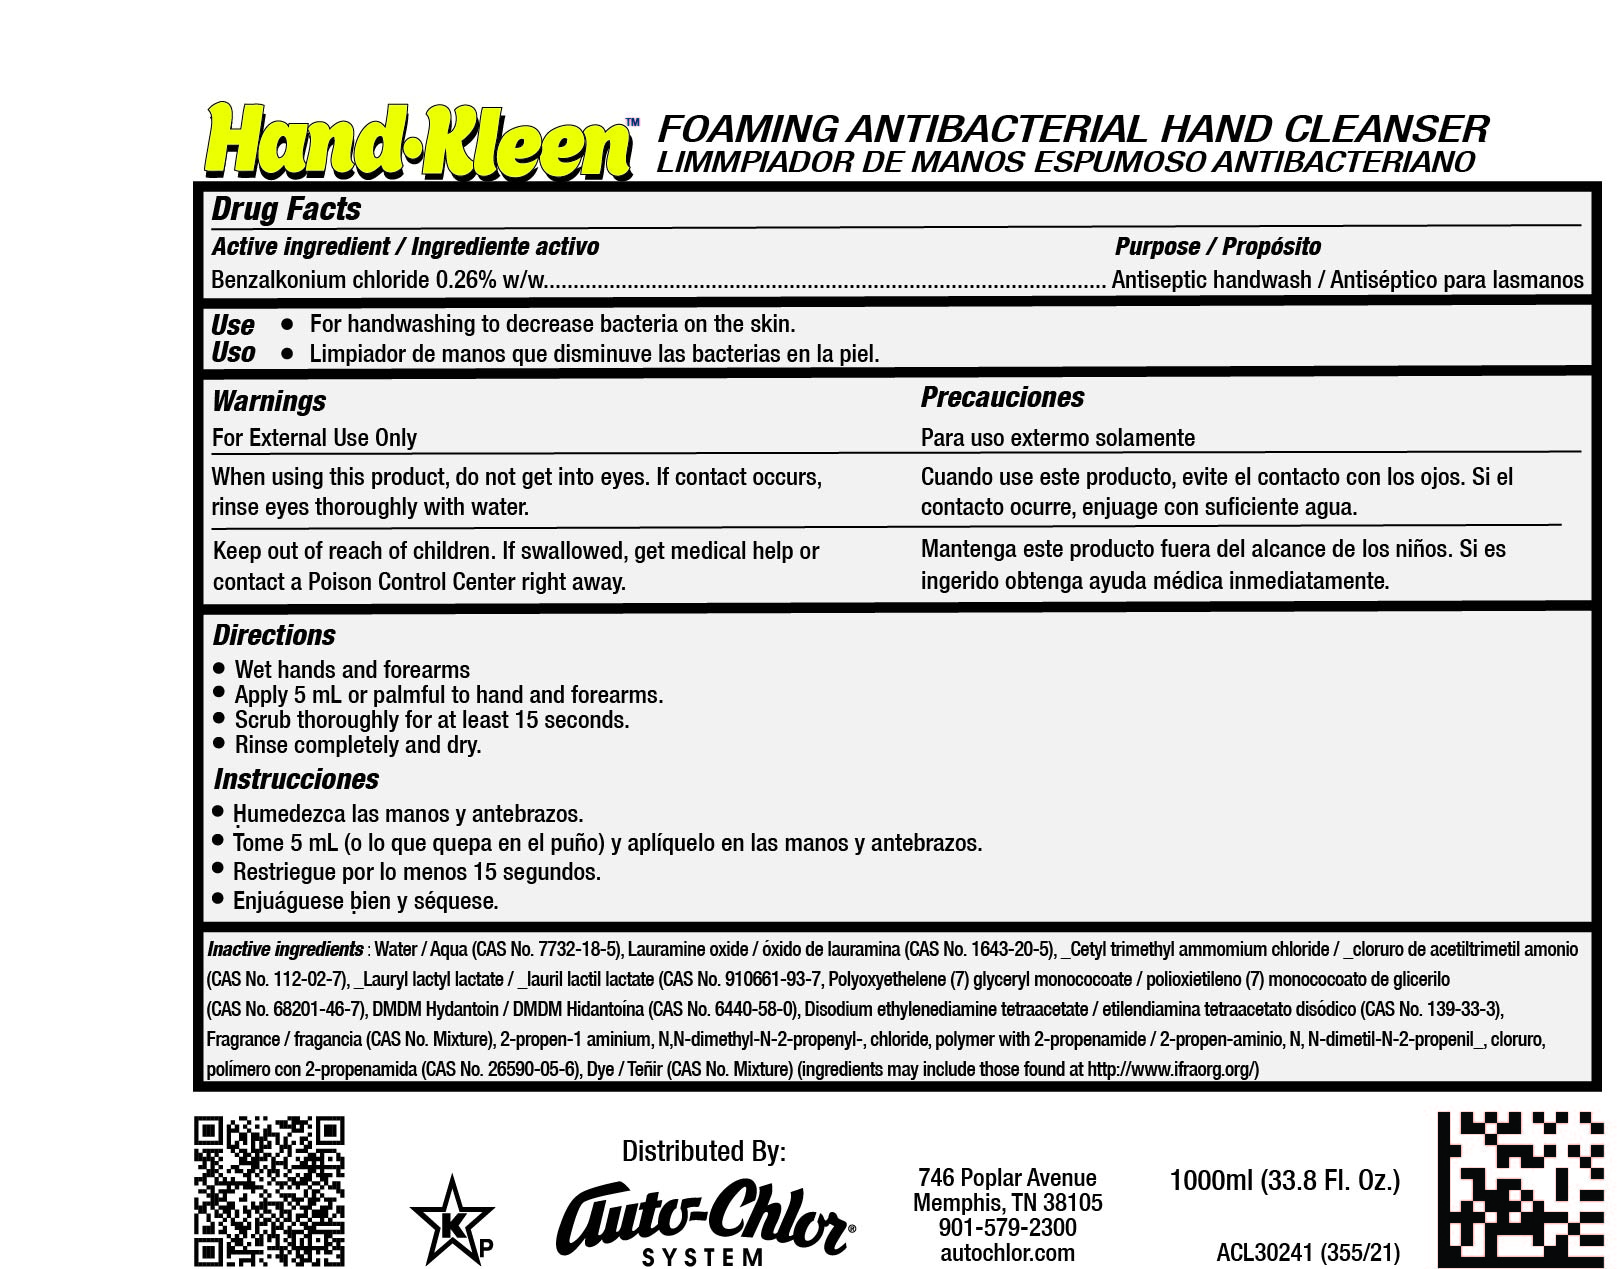 ACL30241 HK Foaming Antibacterial Hand Cleanser 1000ml Label 355.21.jpg